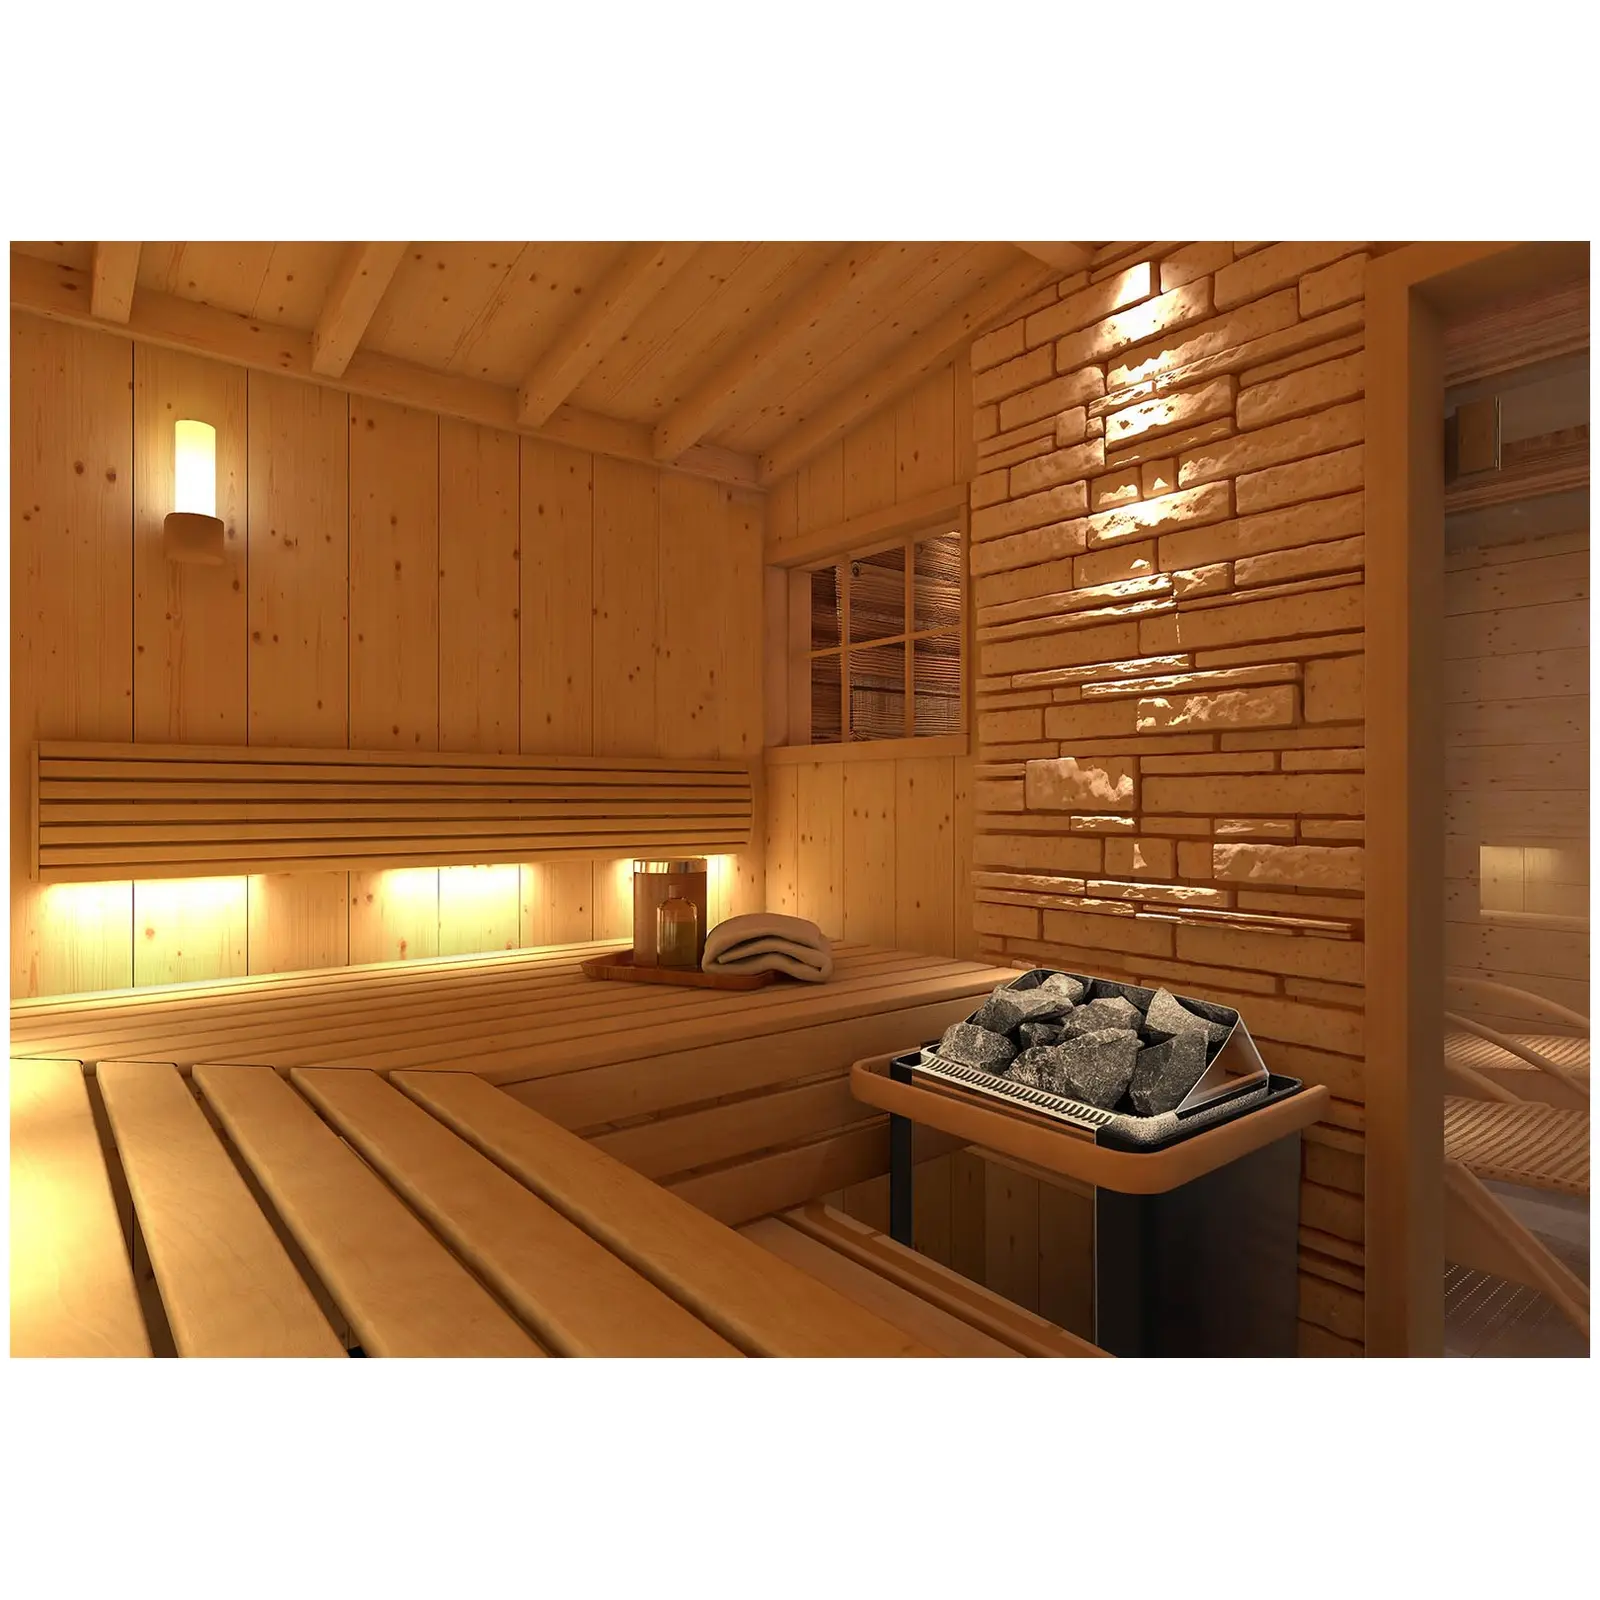 Piec do sauny - elektryczny - 4,5 kW - pokrętła